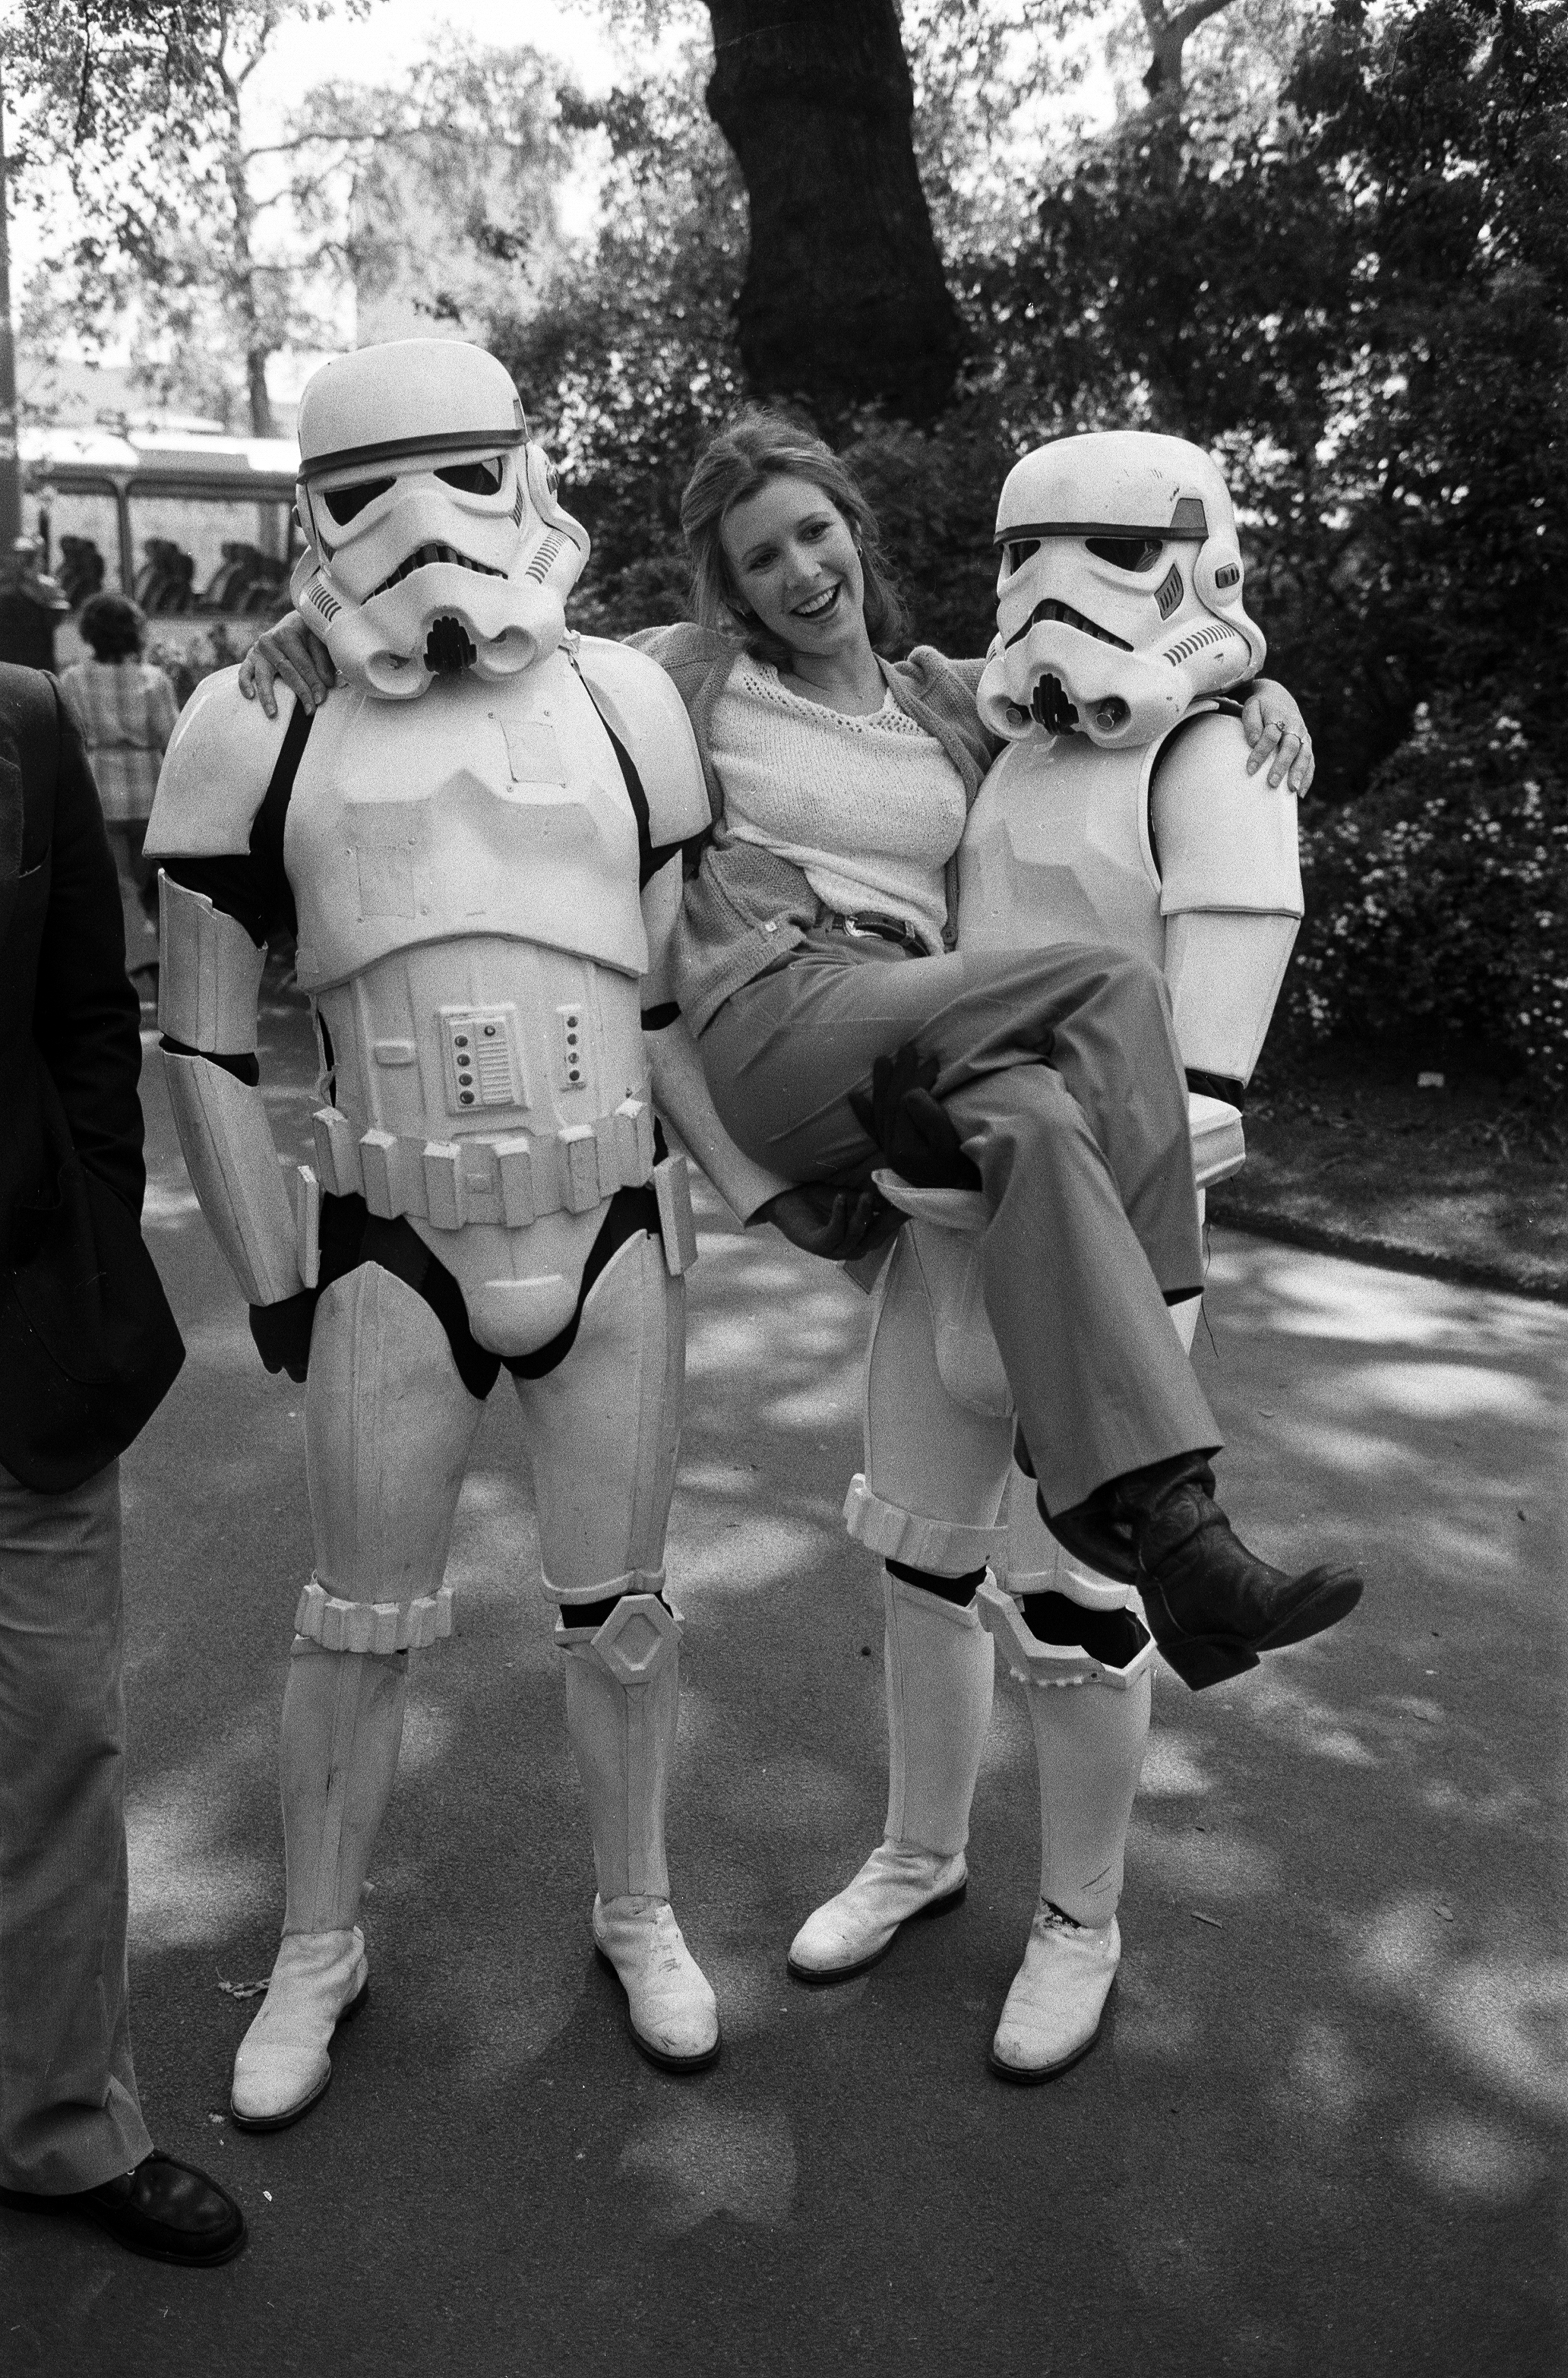 Carrie Fisher et deux Stormtroopers de "Star Wars" la soutenant de chaque côté lors d'un photocall en 1980 | Source : Getty Images